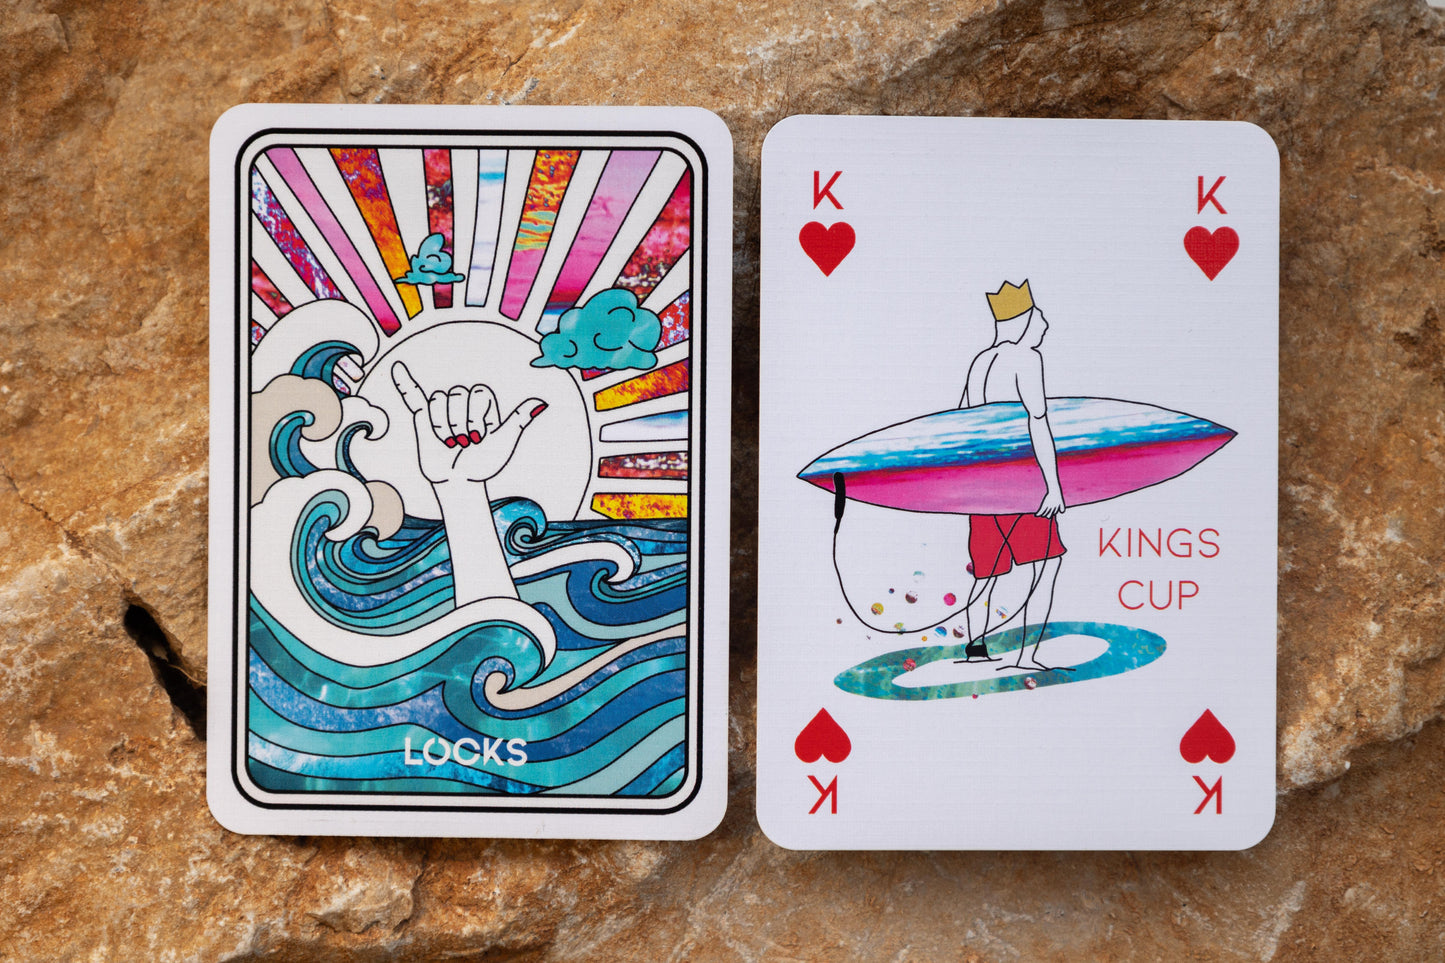 *SURF CUP* | Pokerkarten